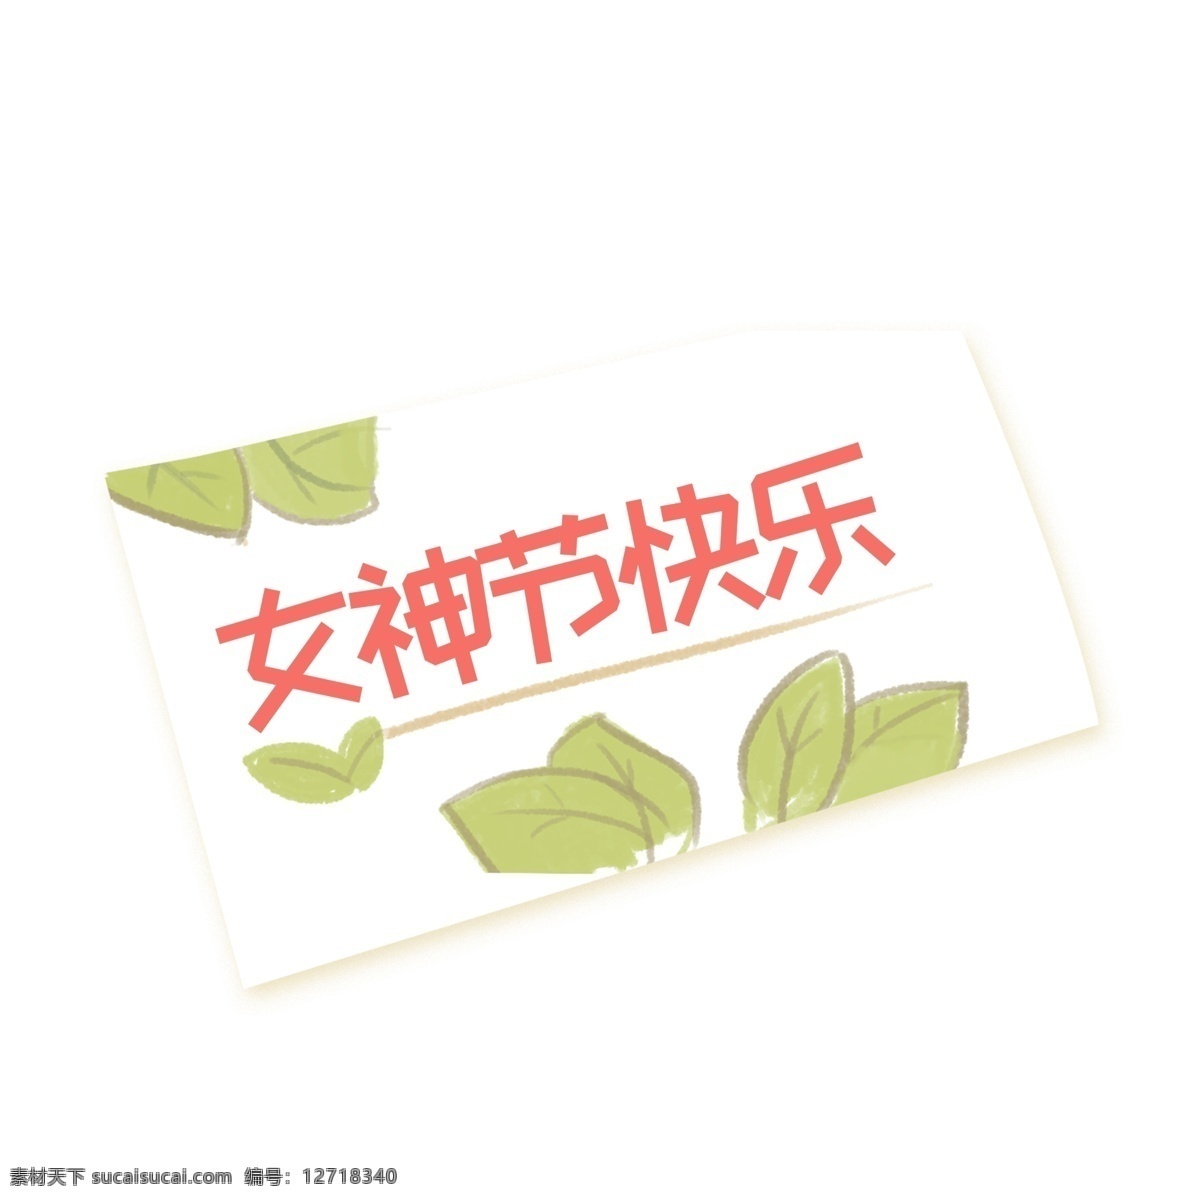 卡通 女神 节 快乐 免 抠 图 叶子 植物 绿色植物 生态植物 新鲜生态叶子 创意字体 红色字体 免抠图